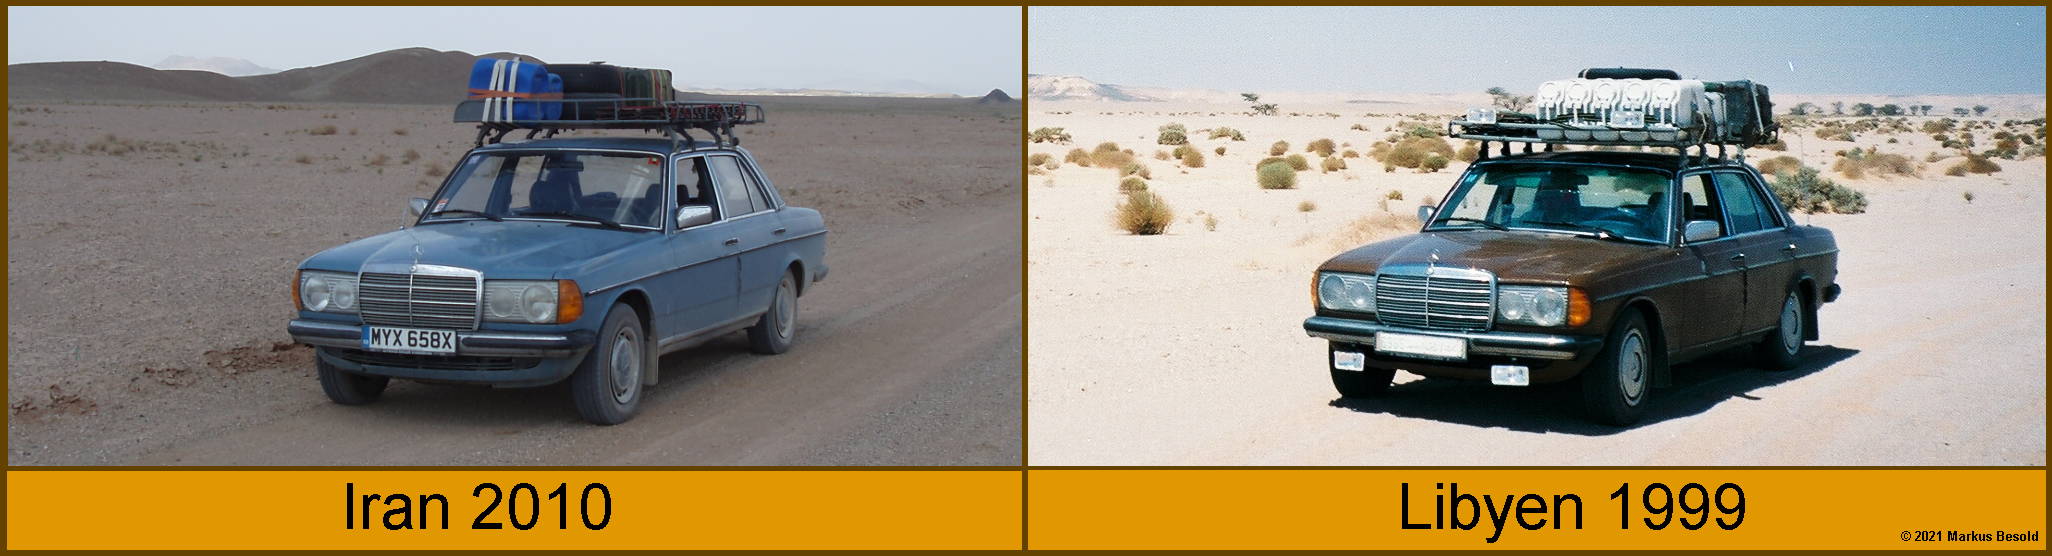 Blauer Benz und Brauner Benz in der Wüste